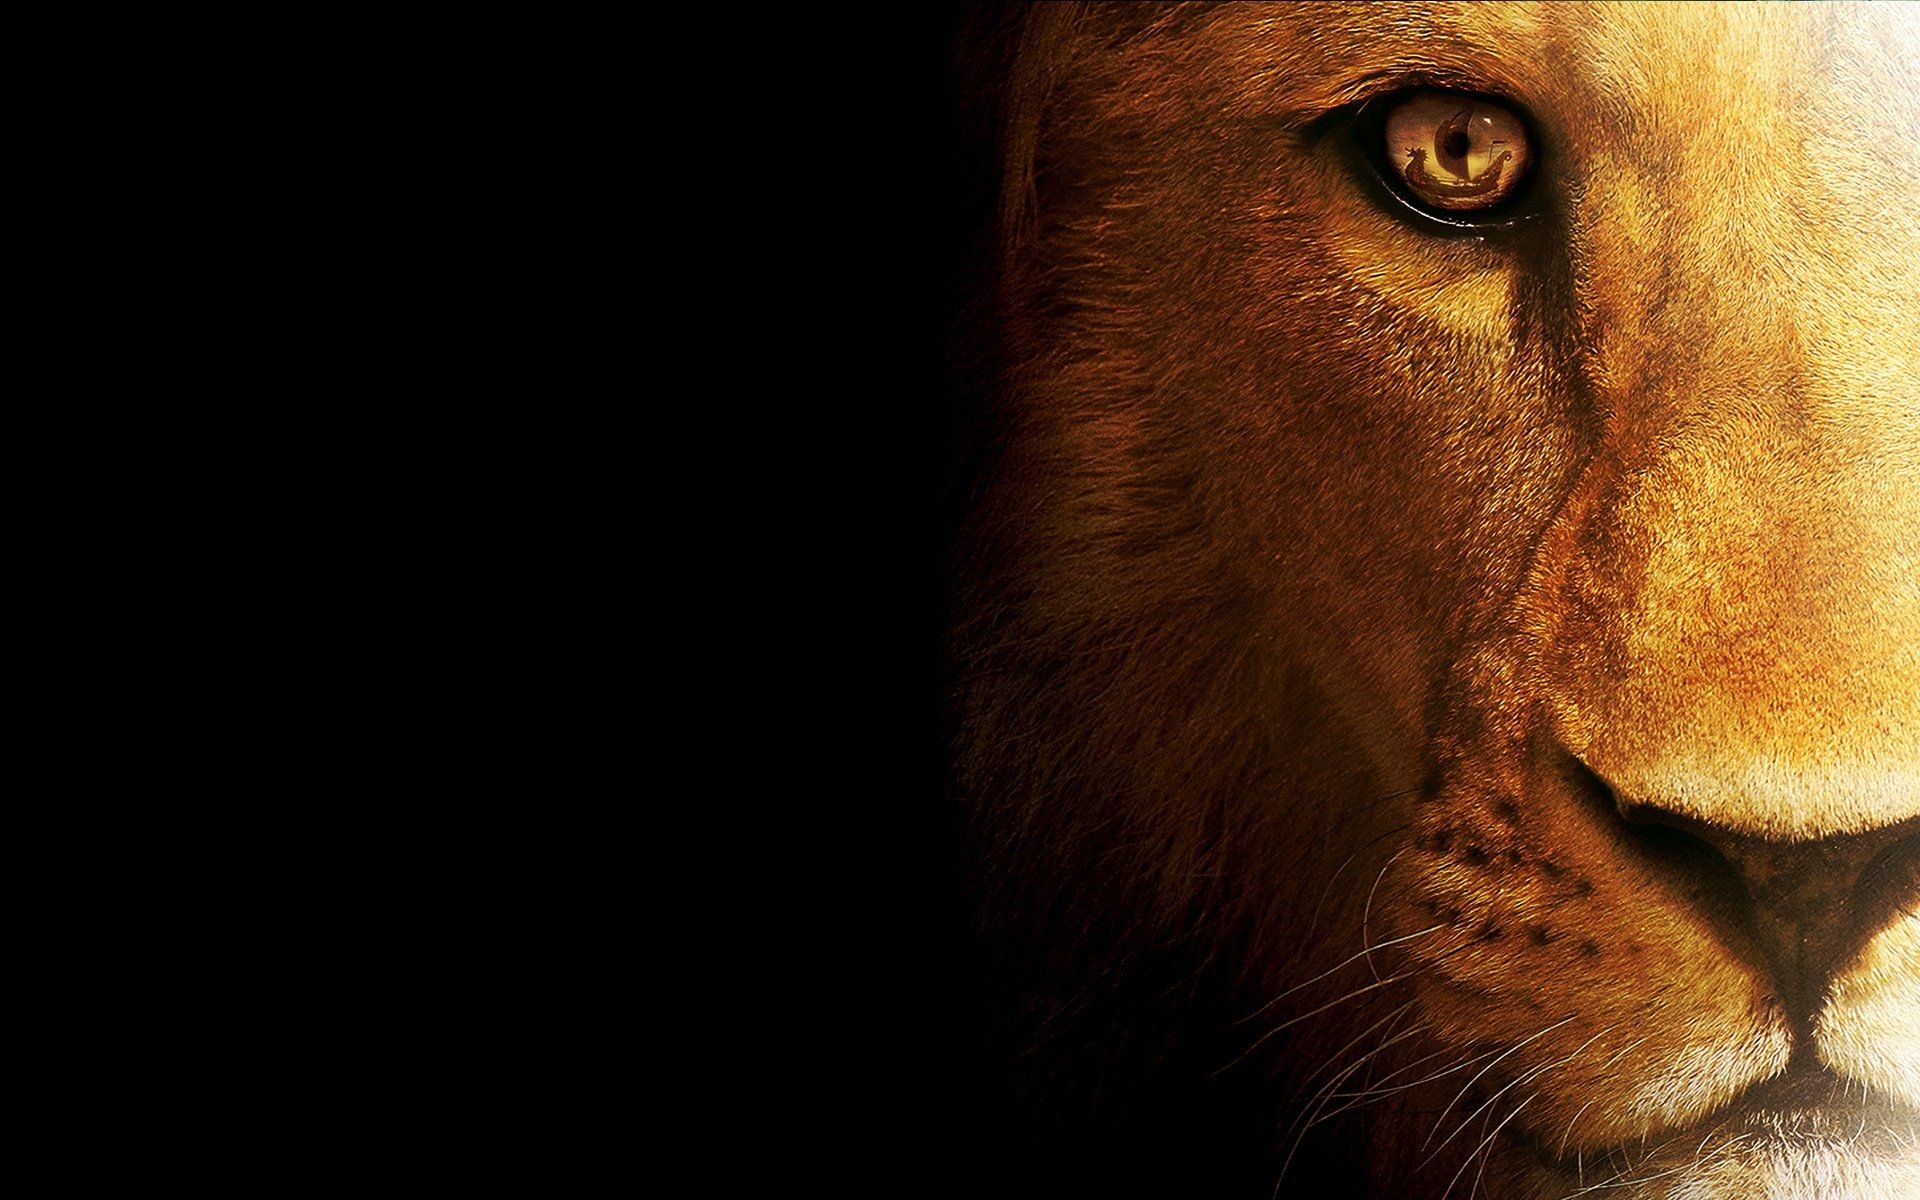 Chúa Jesus và sư tử là một trong những bức ảnh ấn tượng và đầy cảm hứng. Nó truyền tải thông điệp về sự mạnh mẽ và tinh thần gắn kết đến Chúa của một con sư tử. Hãy xem bức ảnh này và cảm nhận sự kết nối giữa Chúa và thiên nhiên.